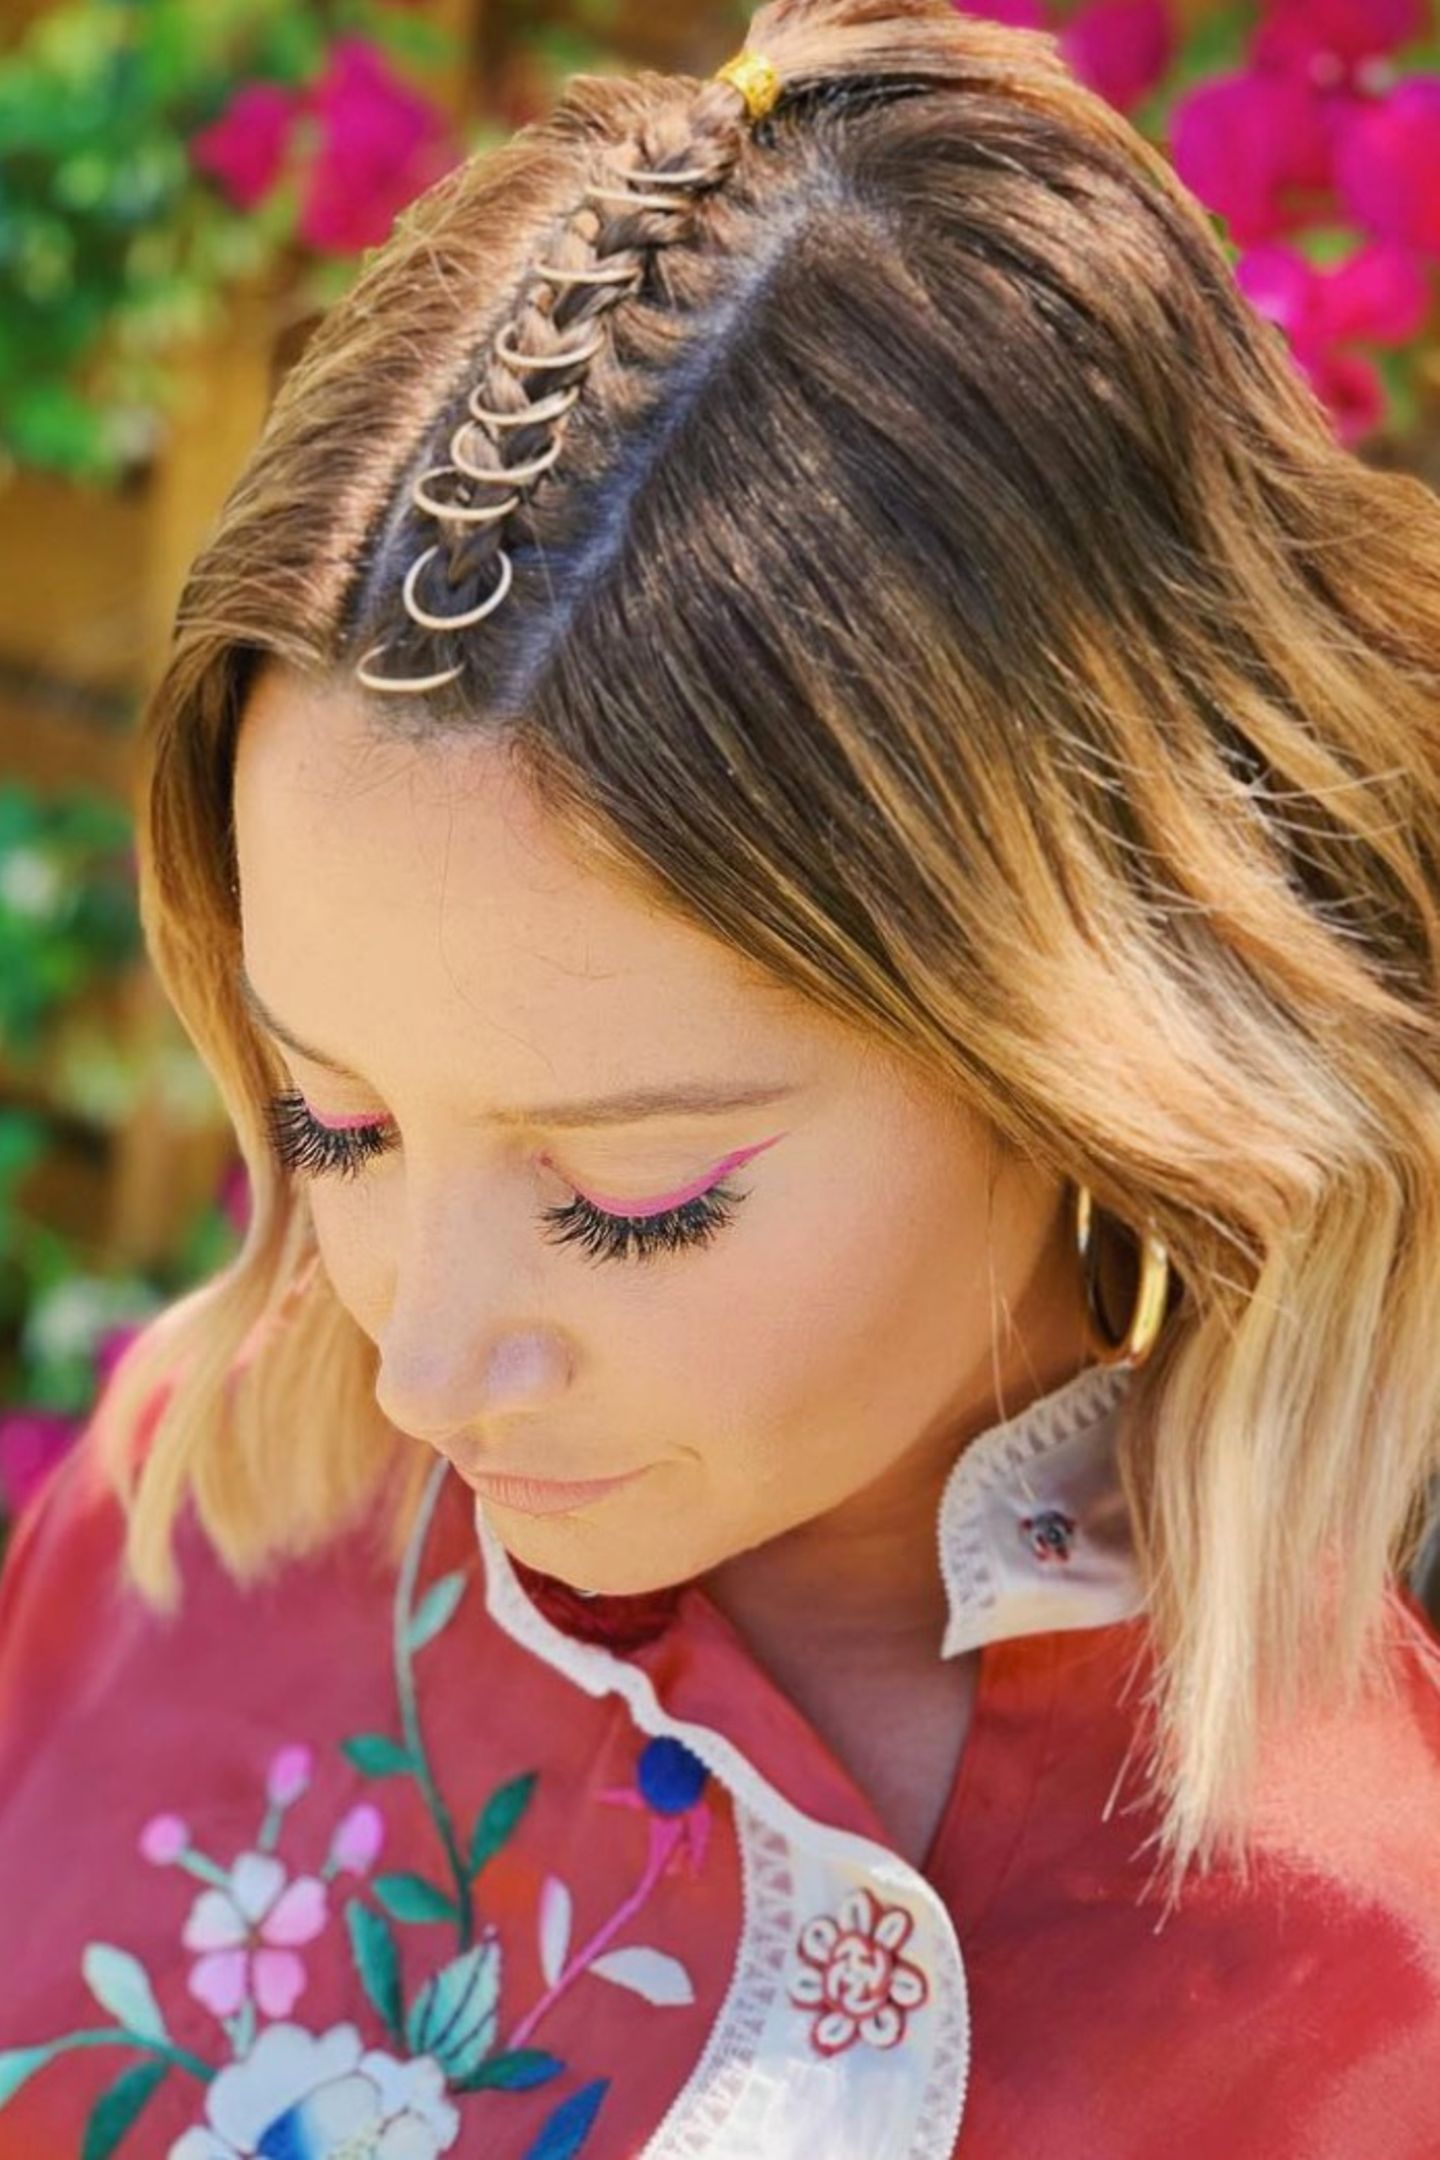 Wer glaubt, dass nur Mädels mit langen Haaren coole Frisuren für Coachella stylen können, liegt falsch. Ashley Tisdale beweist, dass sich auch Kurzhaarfrisuren festivaltauglich stylen lassen. Sie hat sich kleine goldene Ringe auf den Scheitel flechten lassen. 